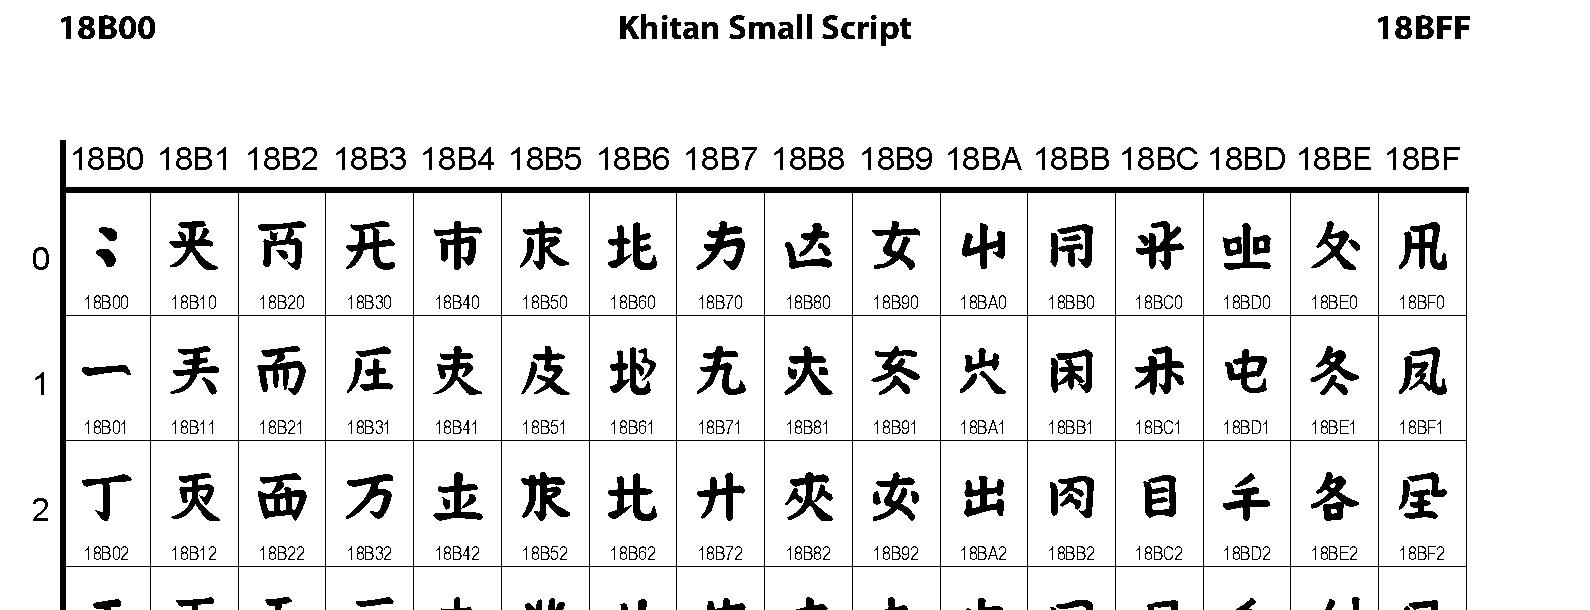 Unicode - Khitan Small Script